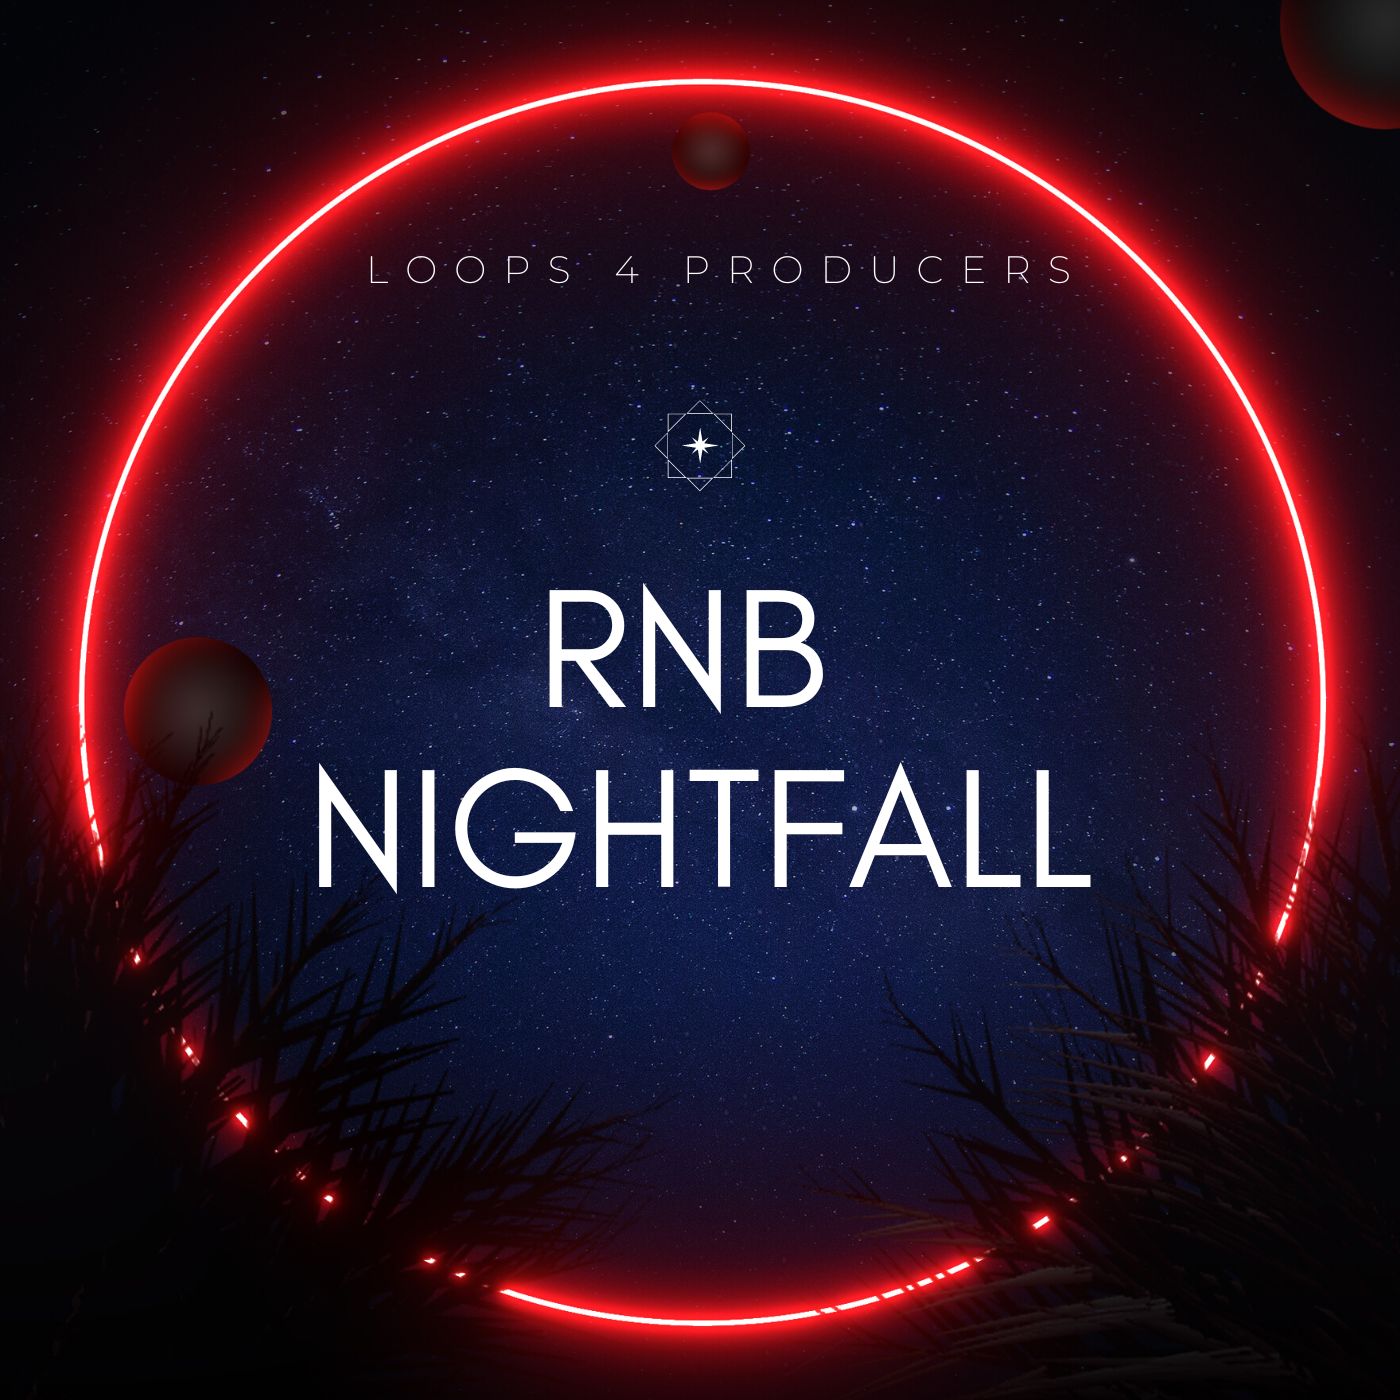 RnB NightFall